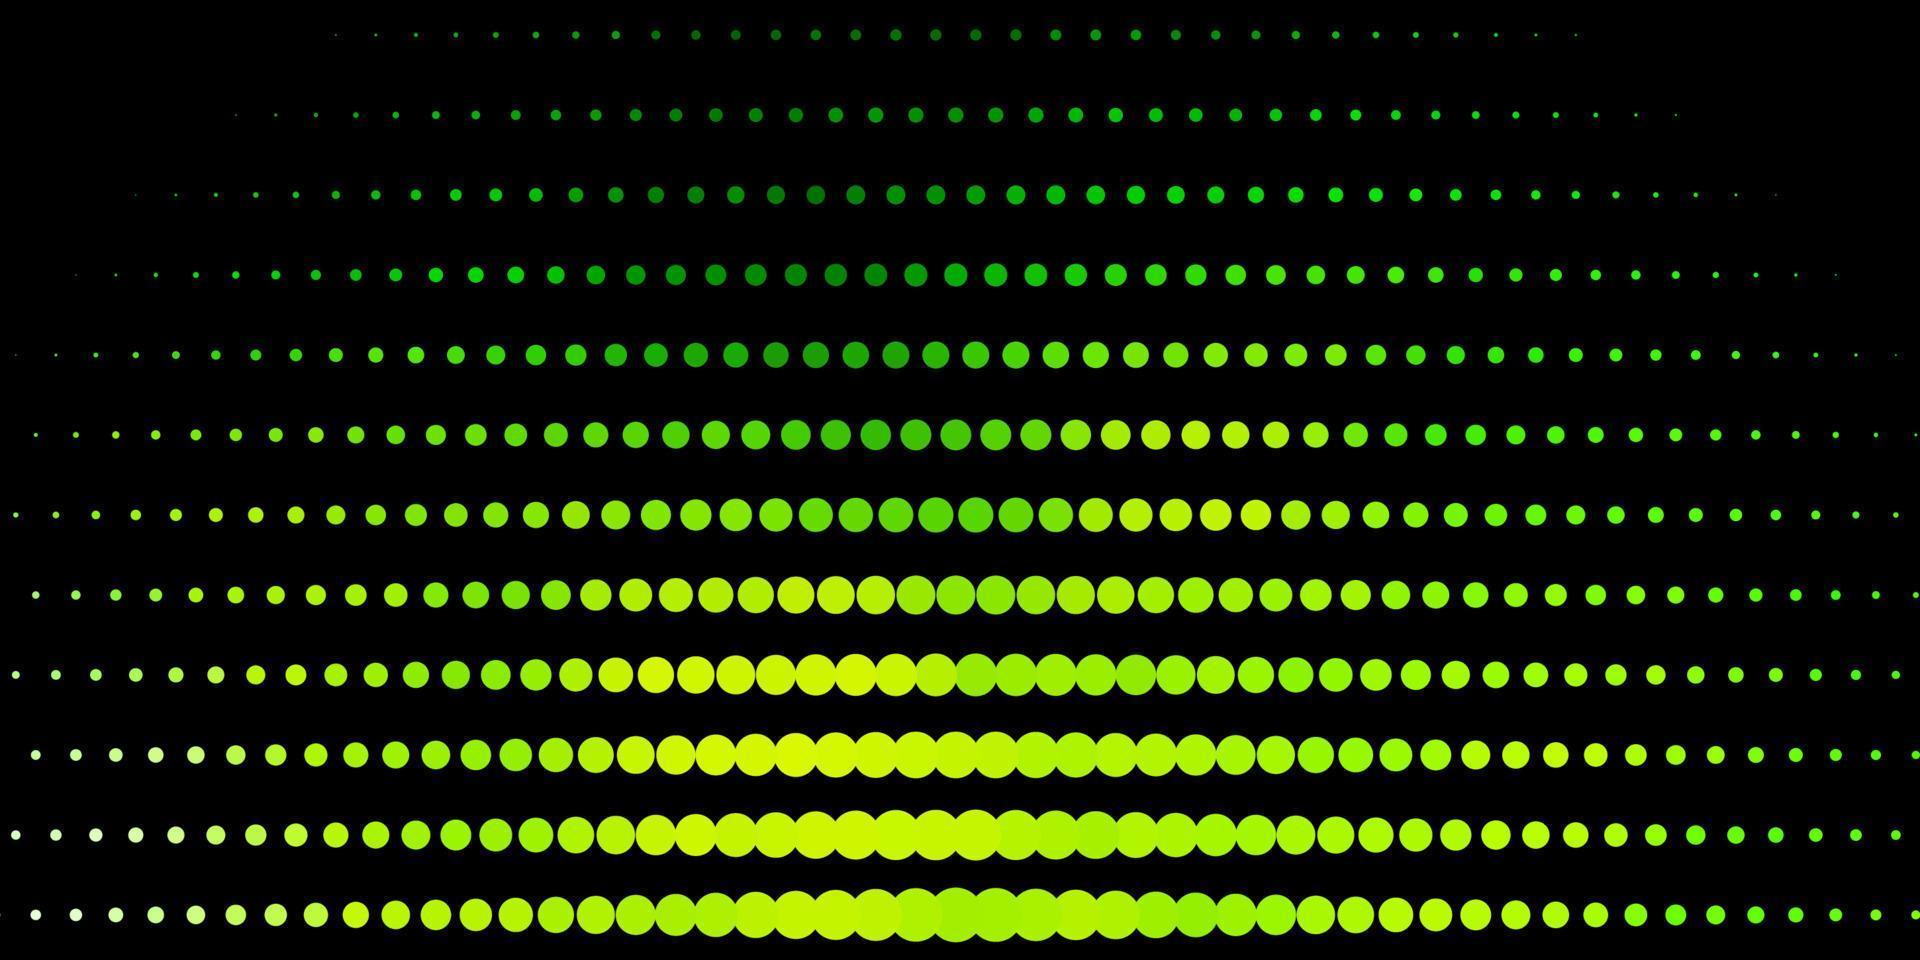 Telón de fondo de vector verde oscuro con puntos.